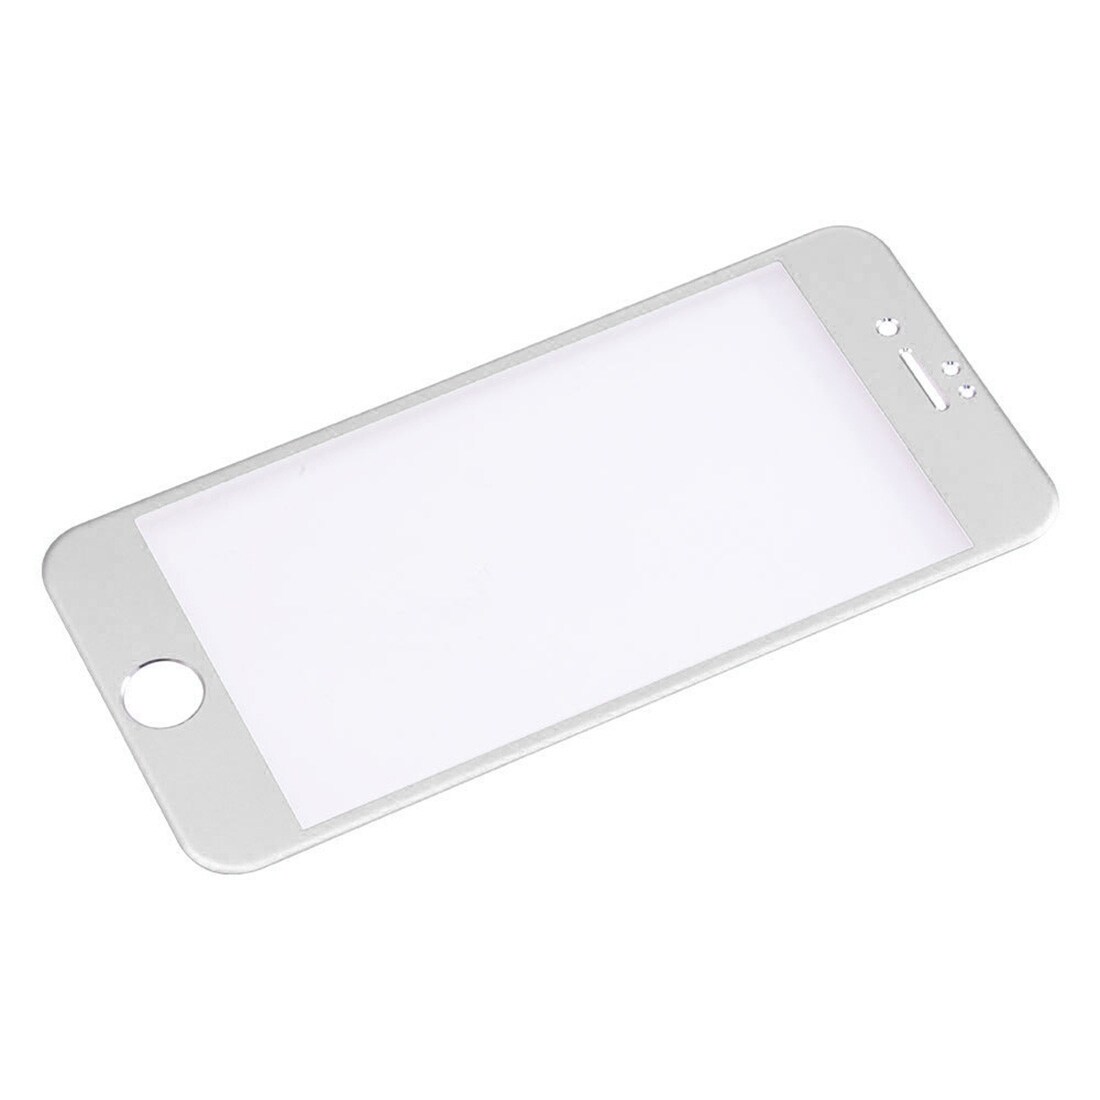 Böjt härdat fullskärmsskydd i glas till iPhone 7 Plus - Silver